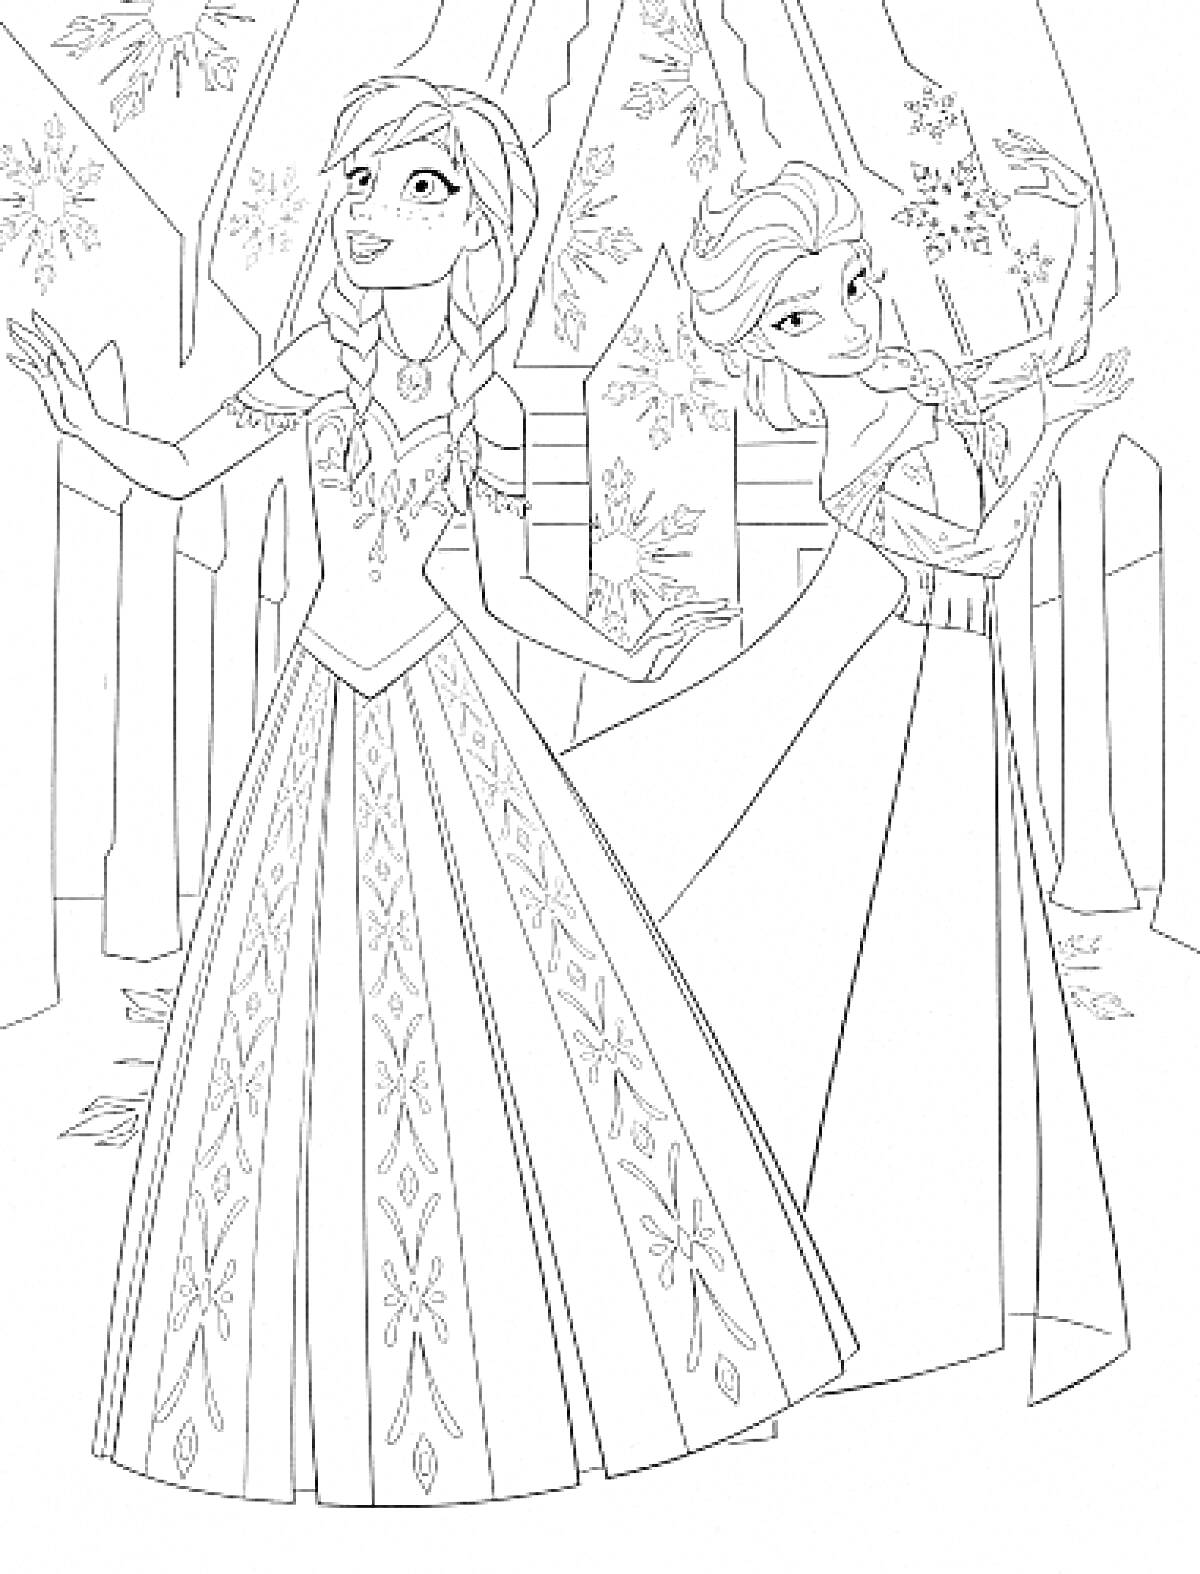 Принцессы в замке с зимним декором, в длинных нарядных платьях